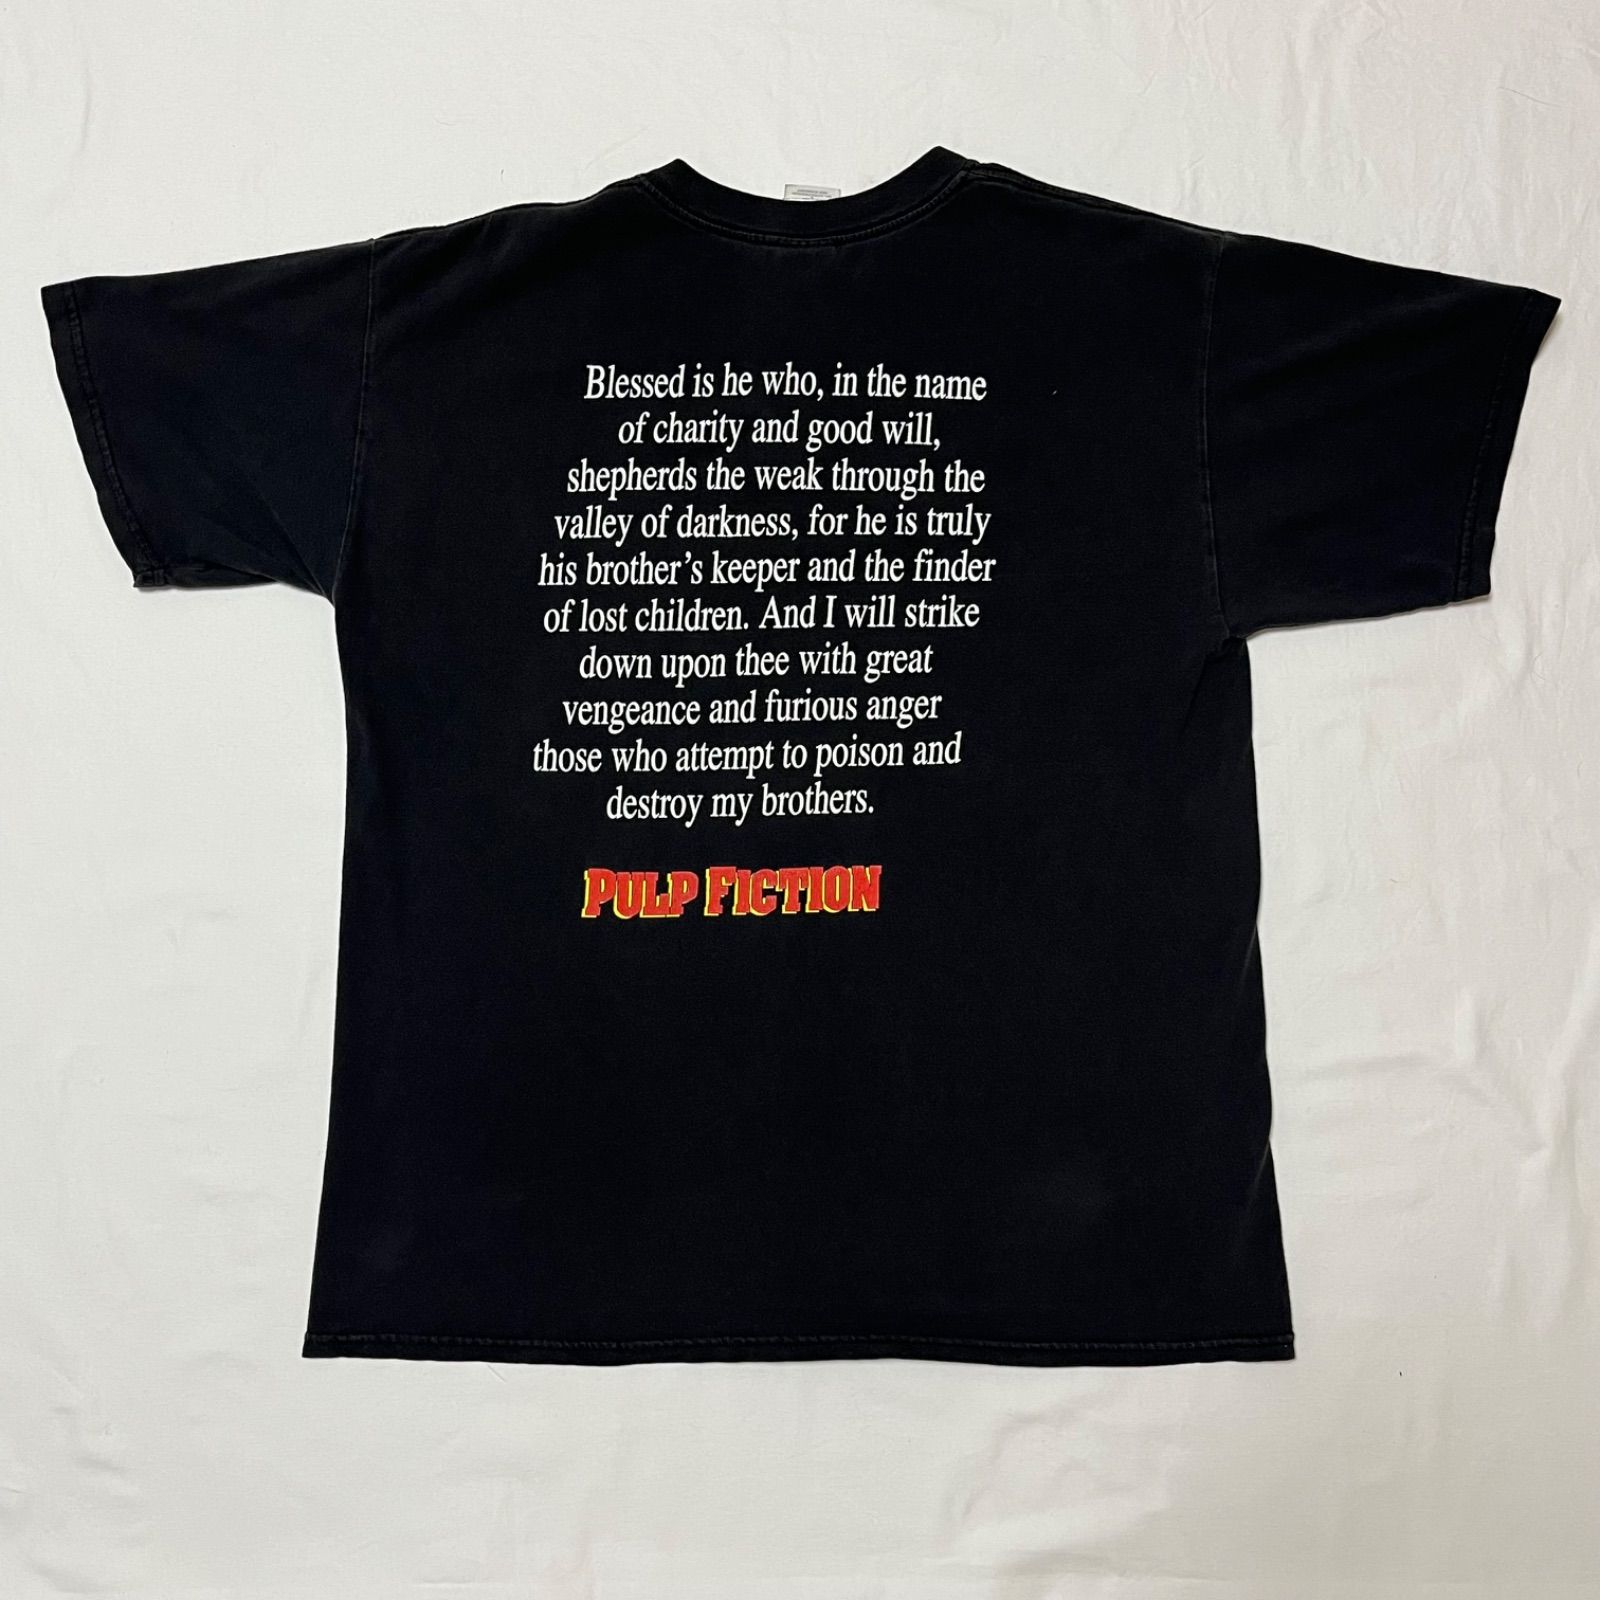 00s Pulp Fiction Lego T-shirt パルプフィクション レゴ パロディ ムービー 映画 プロモーション Tシャツ